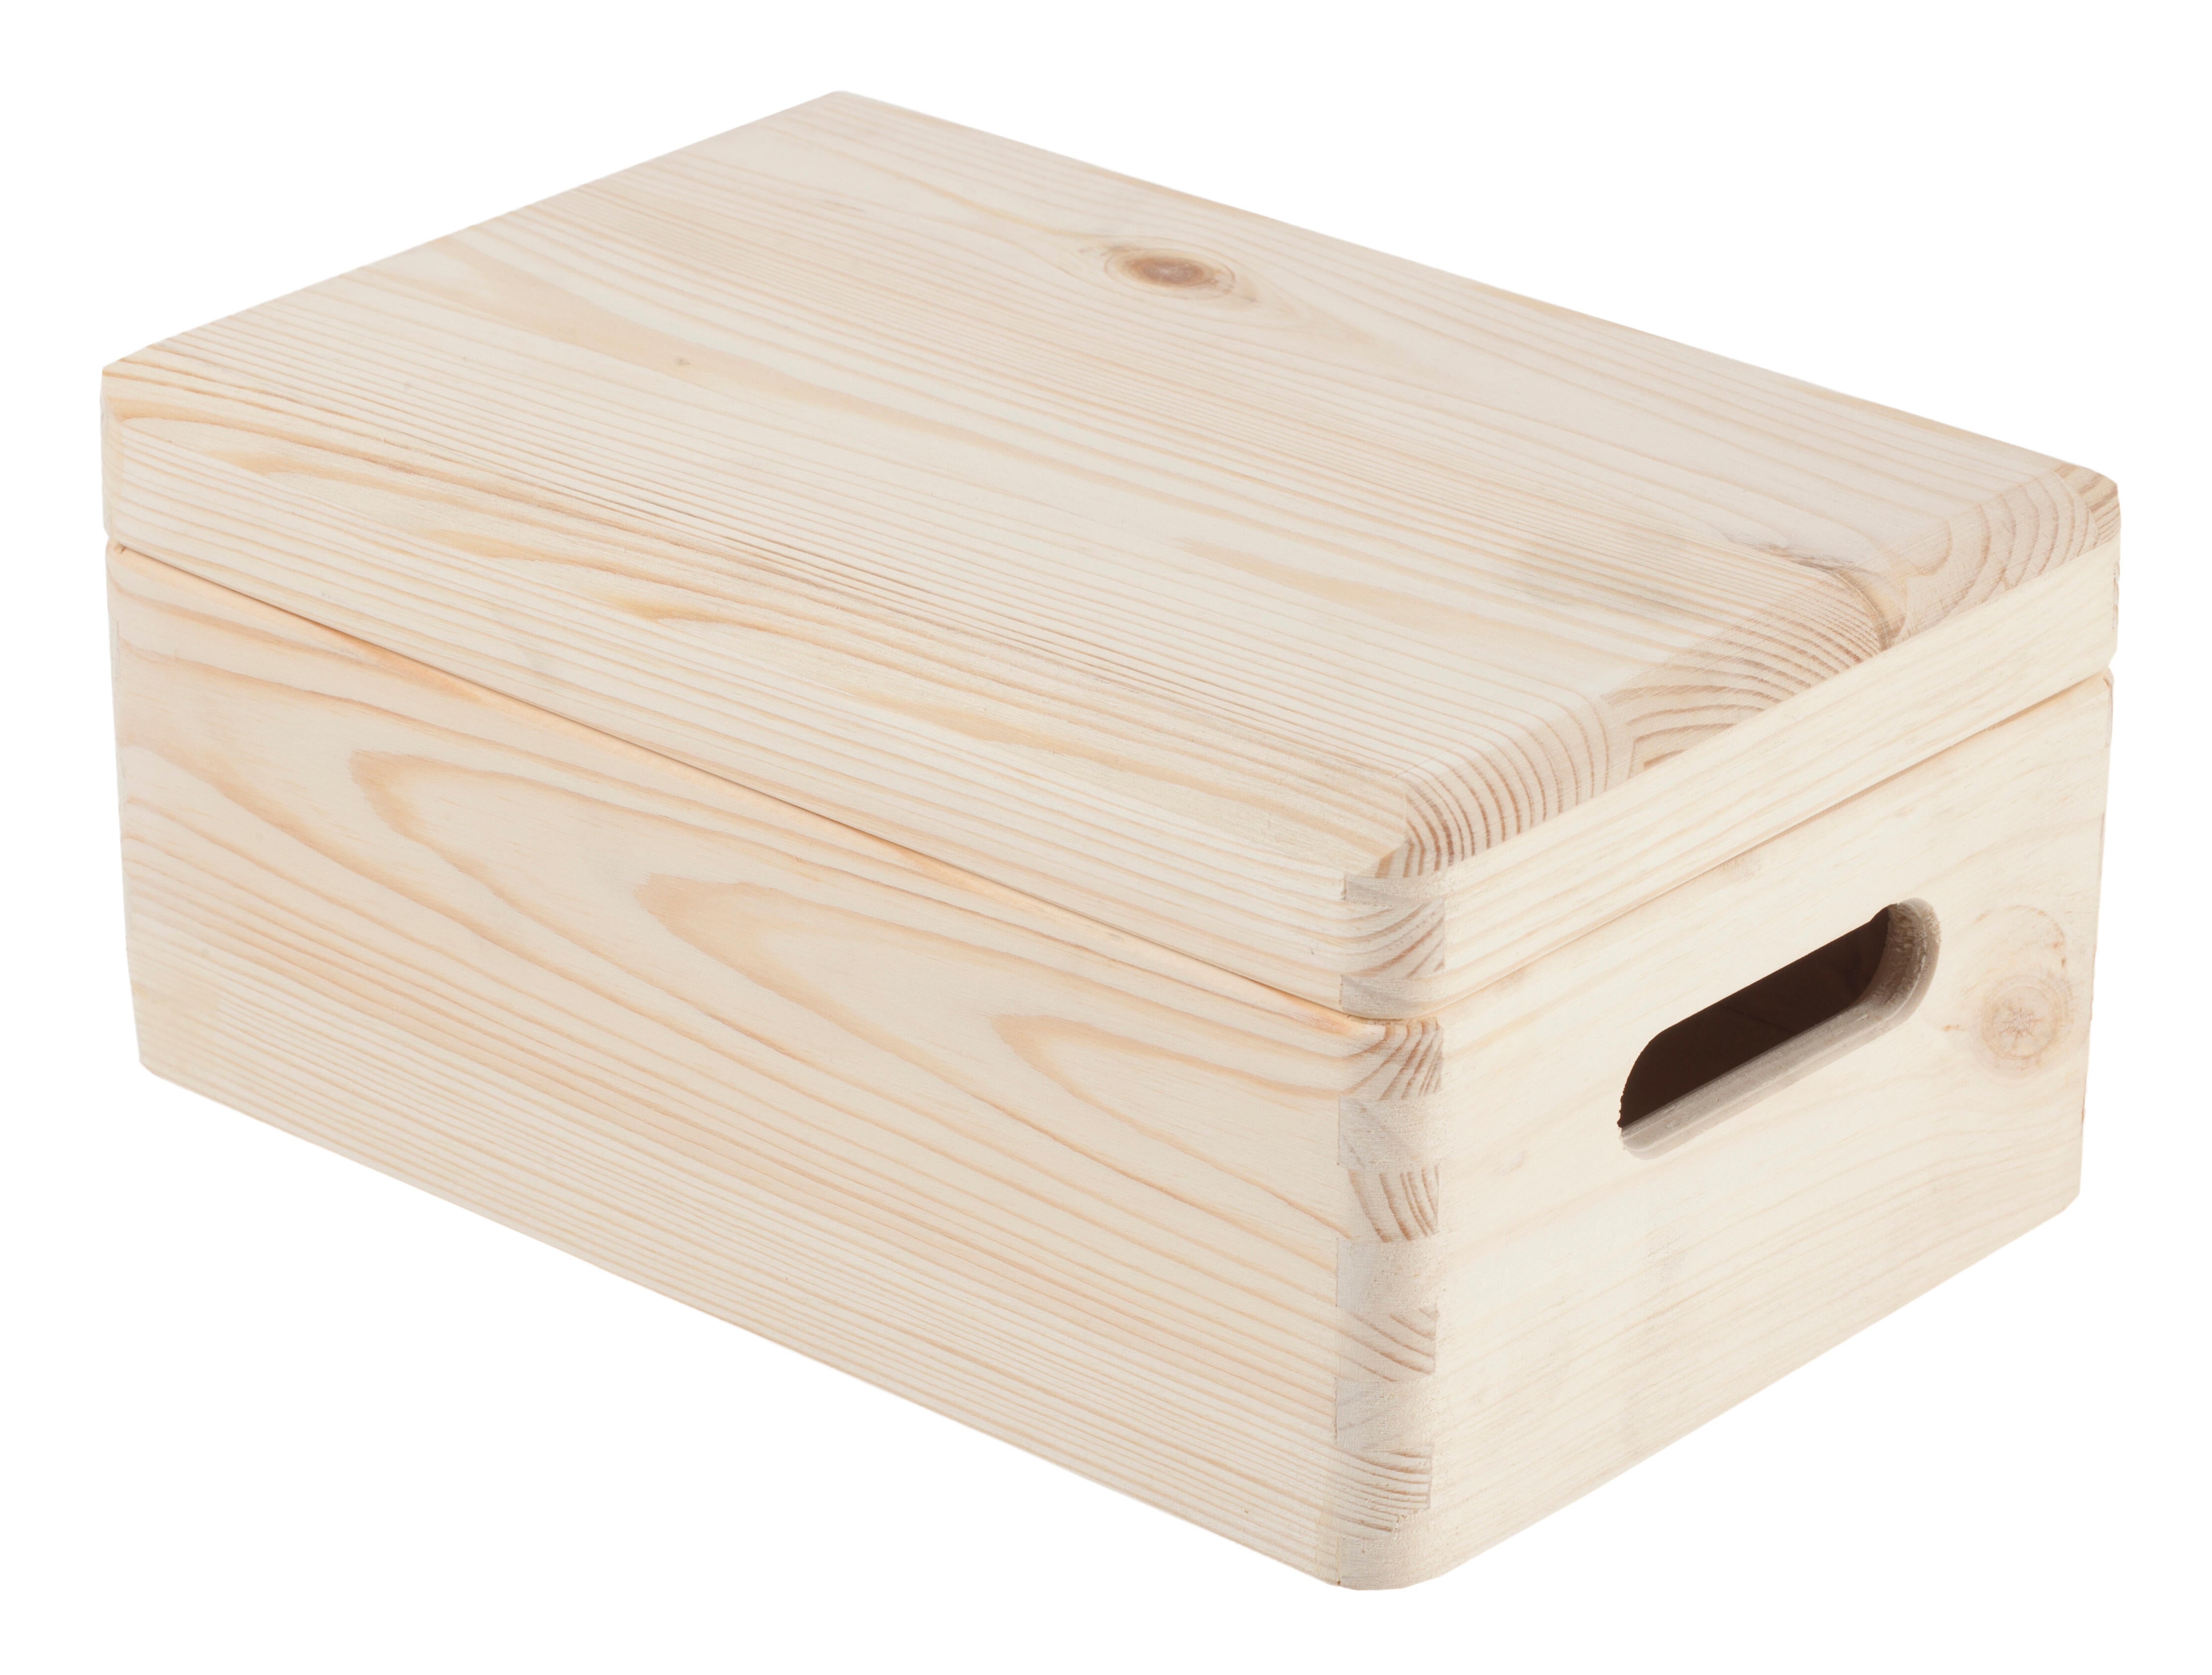 Caja de madera de 14x30x20 cm y capacidad de 8l